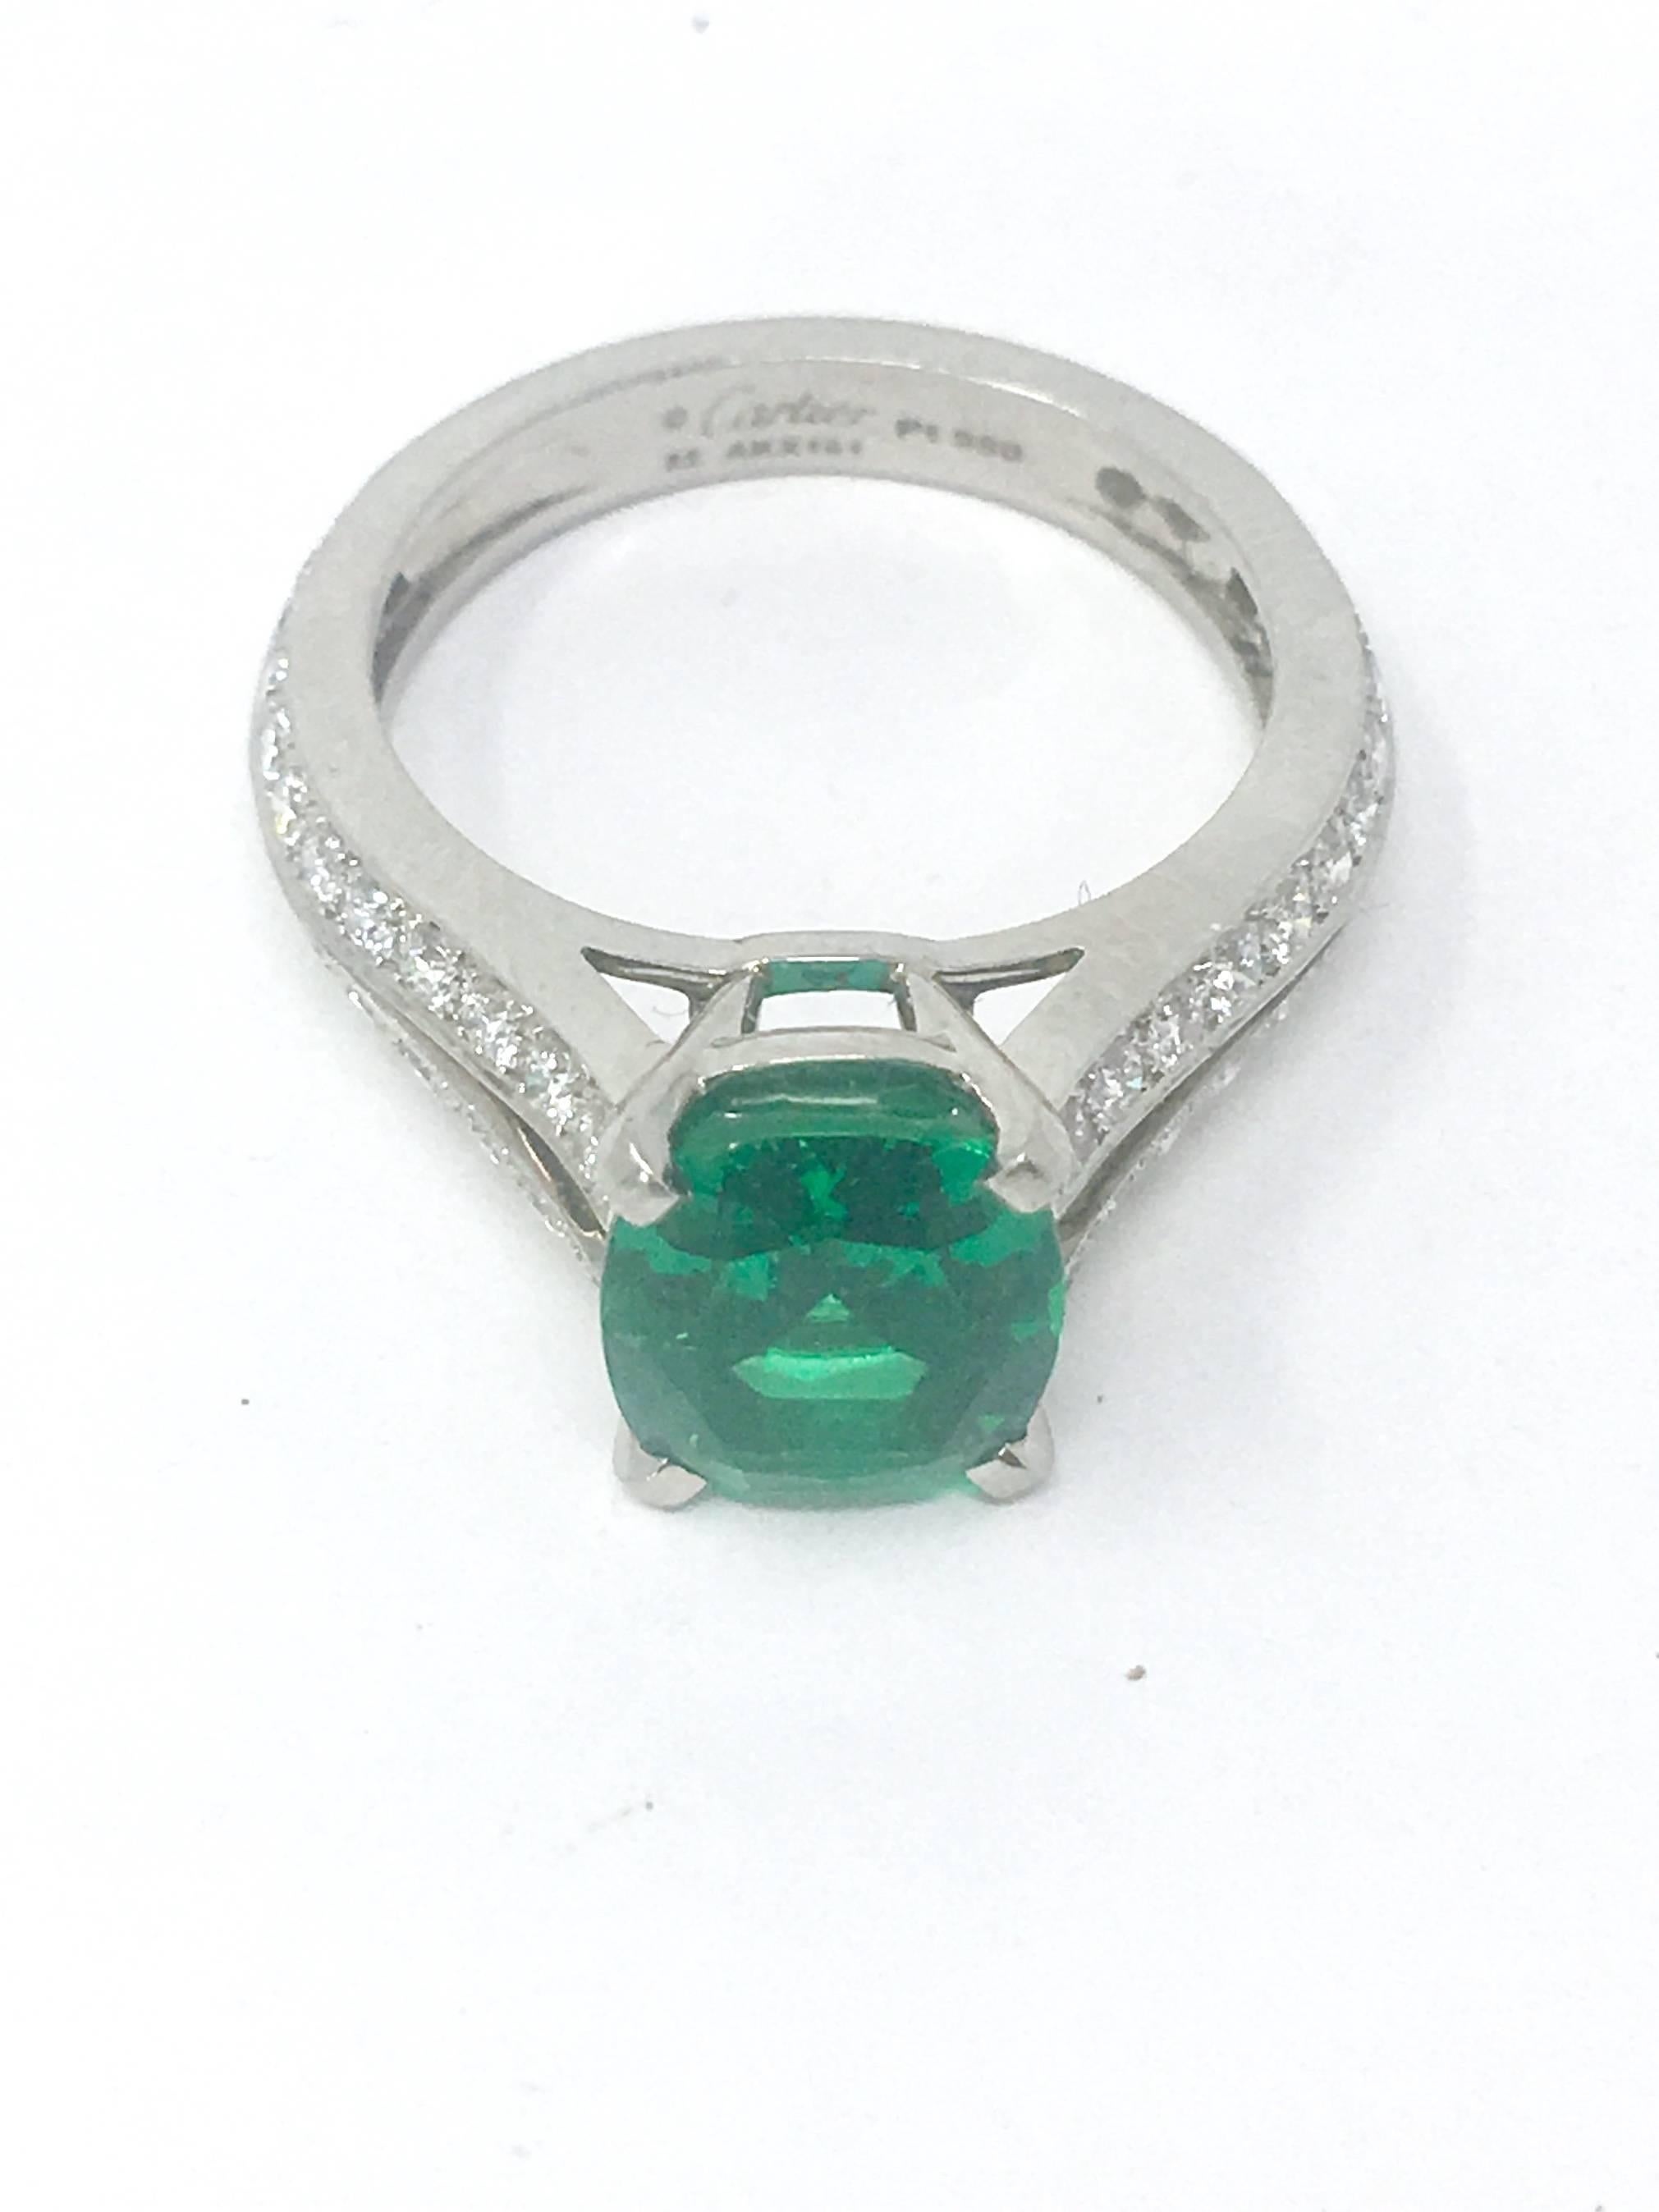 Designer Cartier Emerald and Diamond Platinum Ring 1